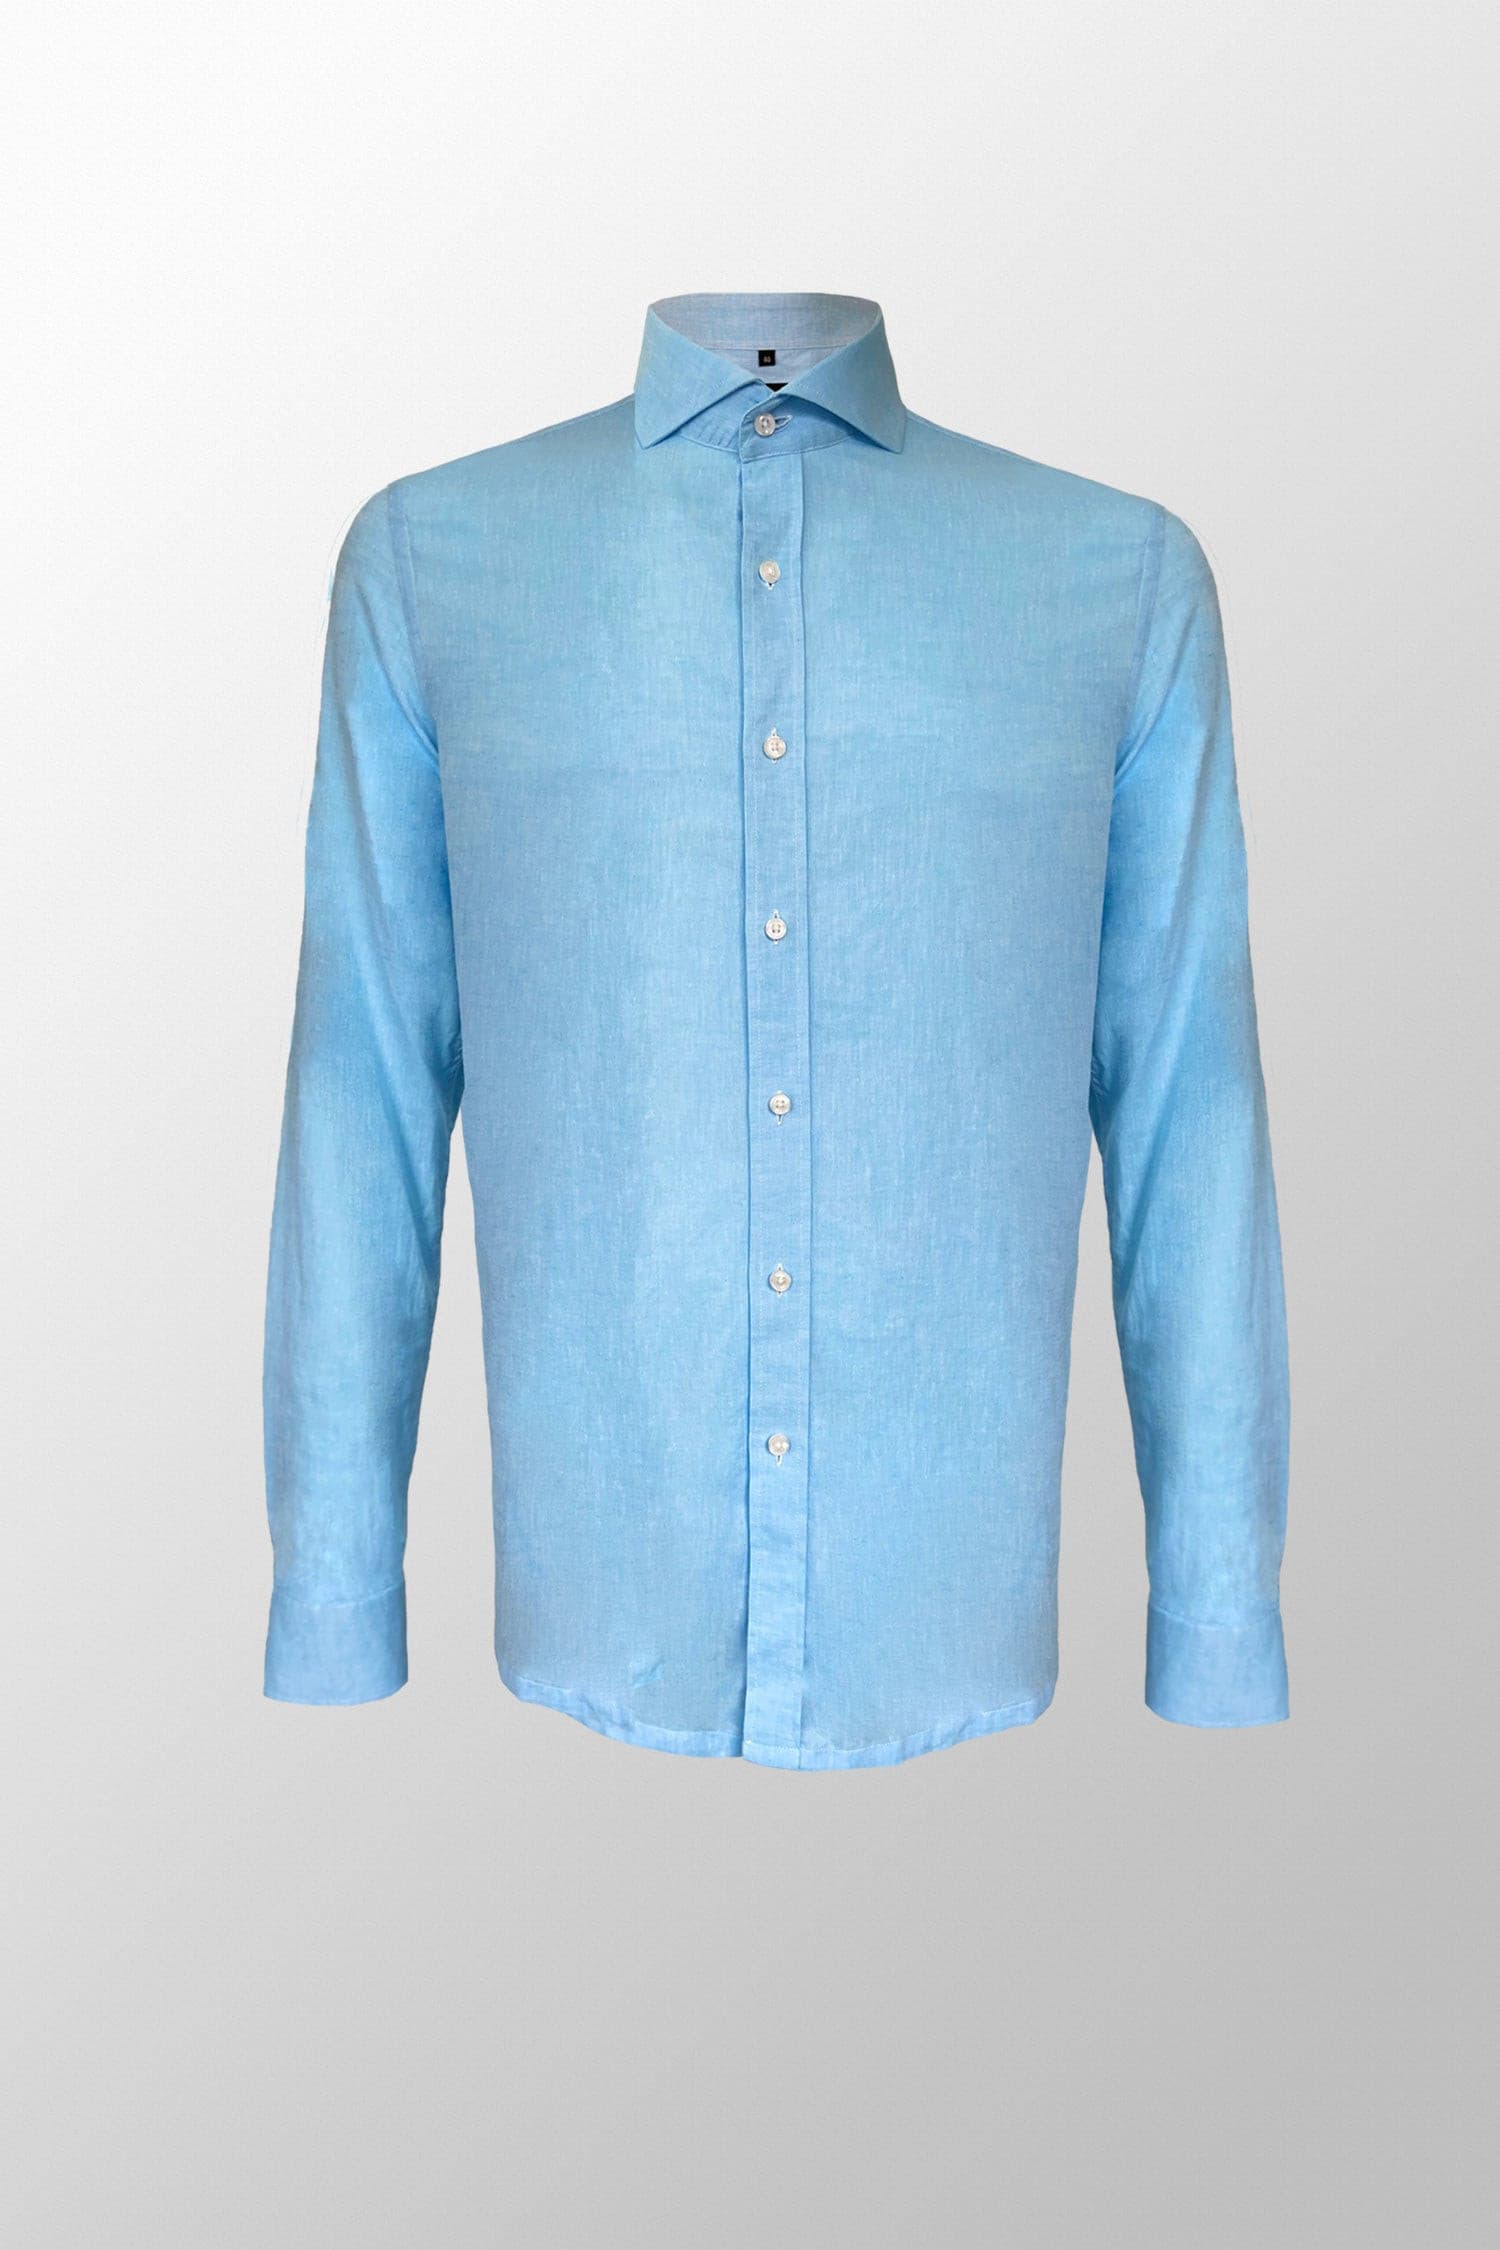 Lichtblauw Overhemd - Premium Linnen - Overhemd - Vercate - Vercate - Overhemden - Strijkvrije overhemden - Heren